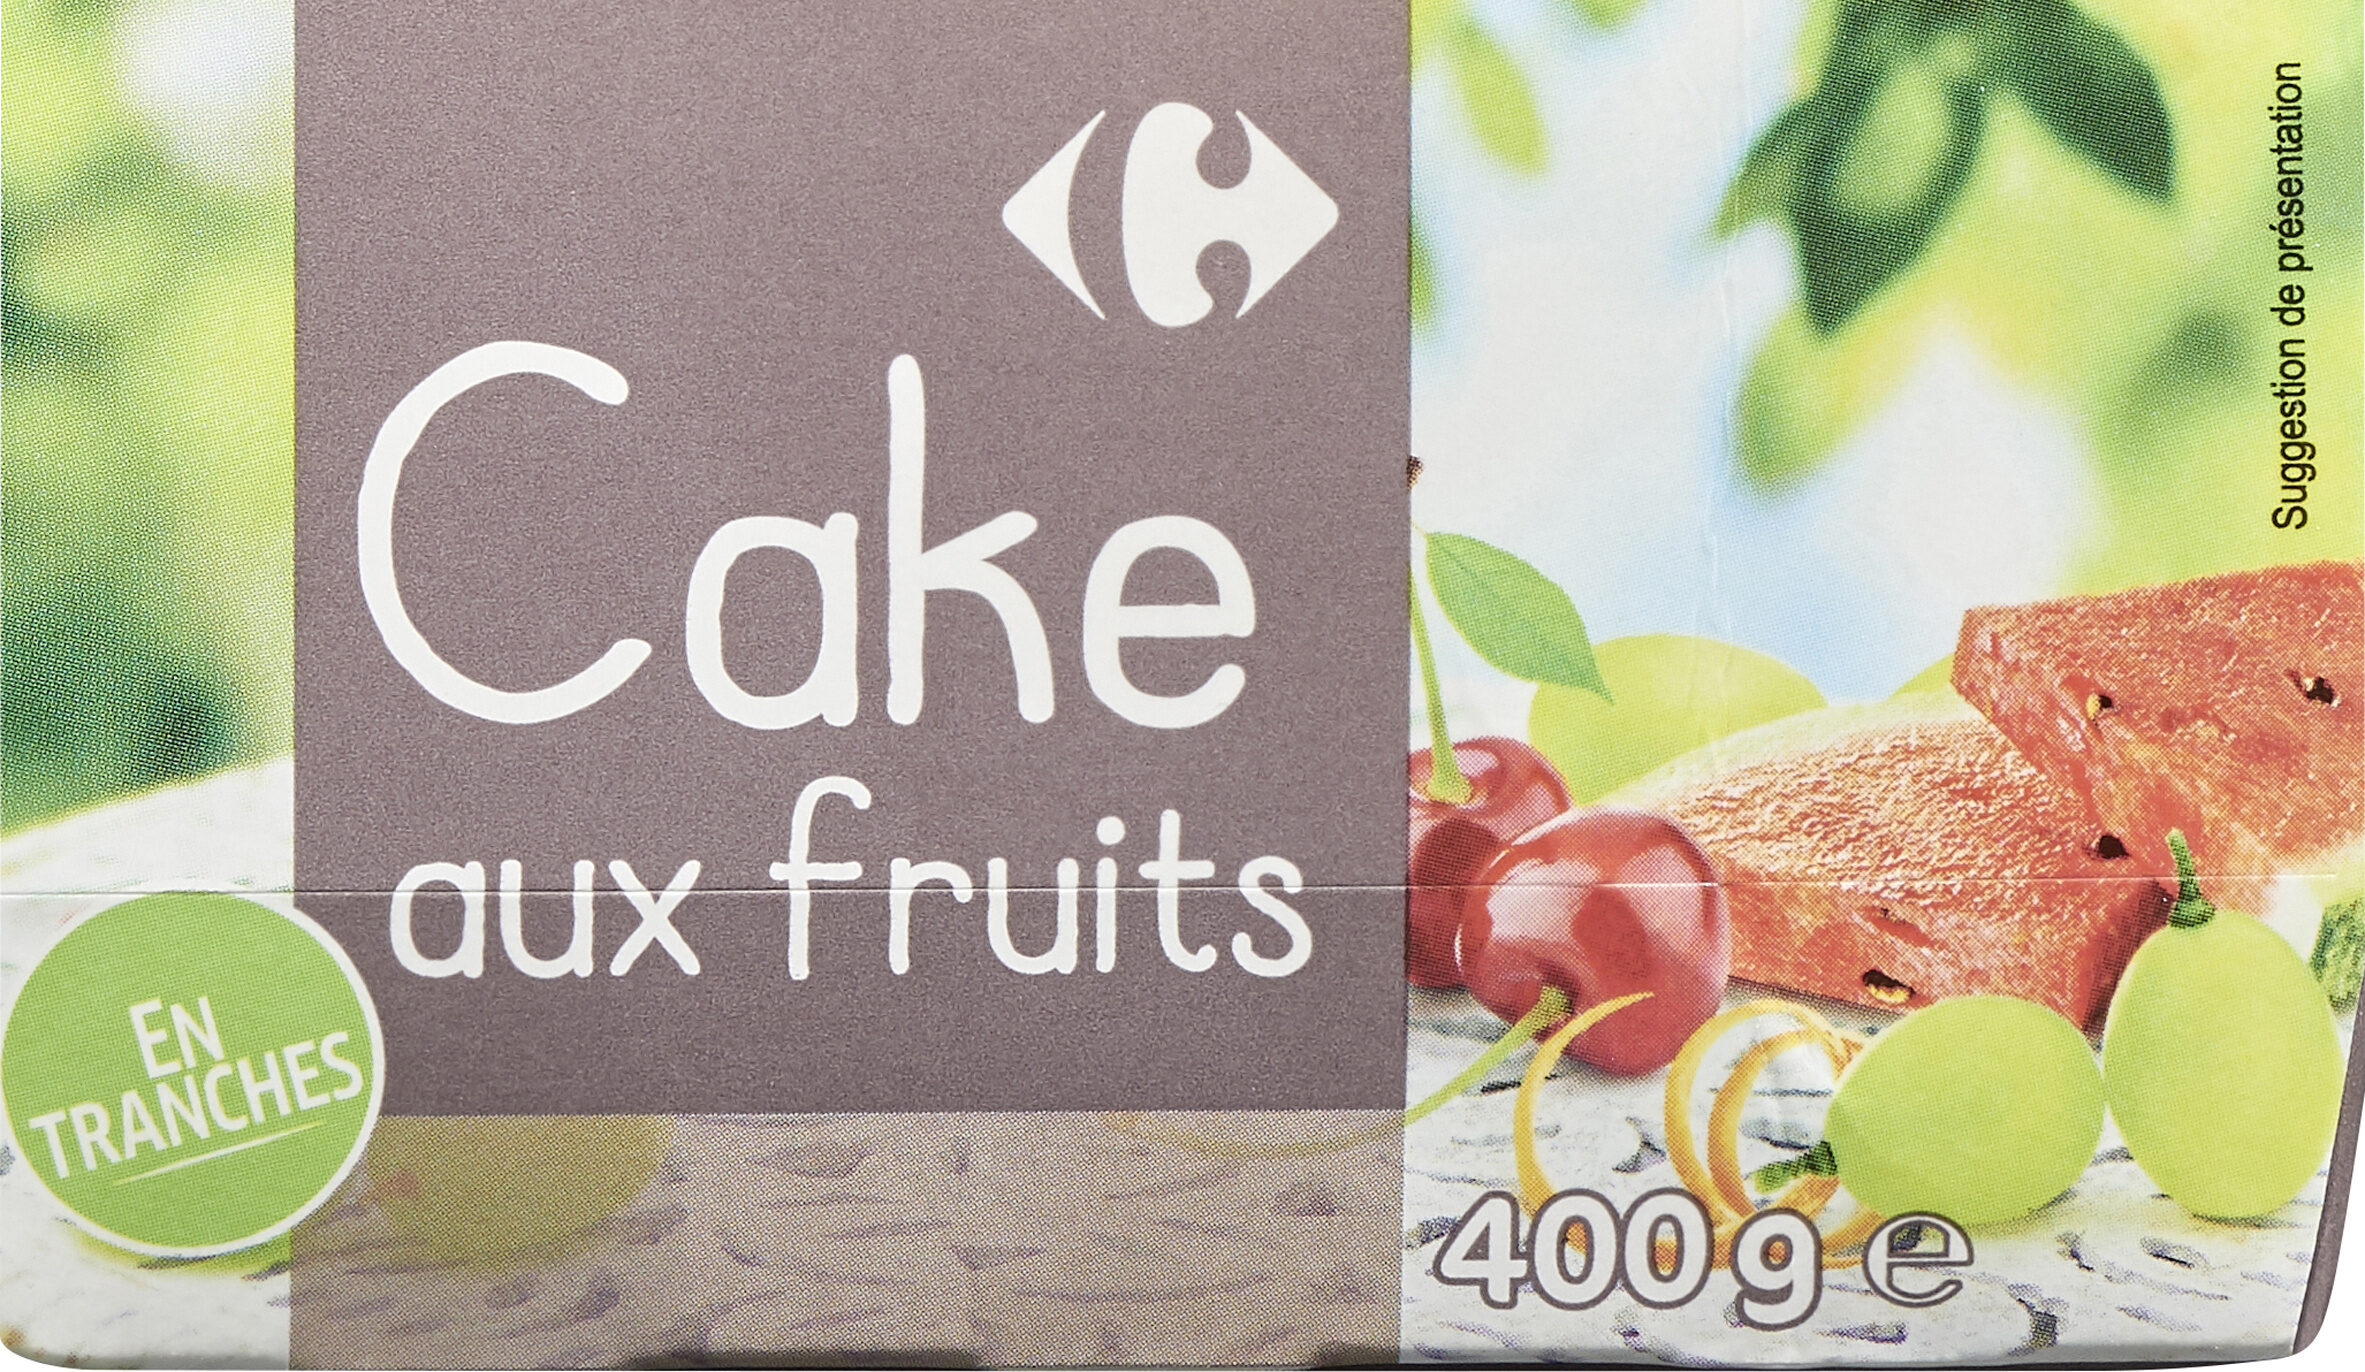 Cake au fruits - Producto - fr